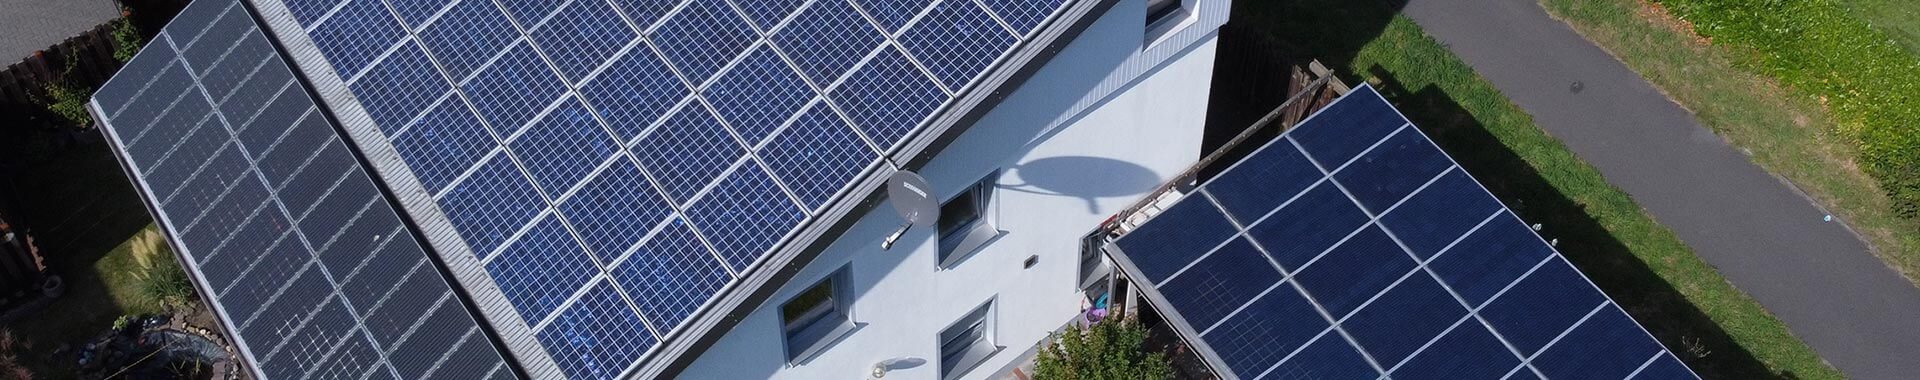 SOLARCON GmbH – Energiesparen einfach und gut!